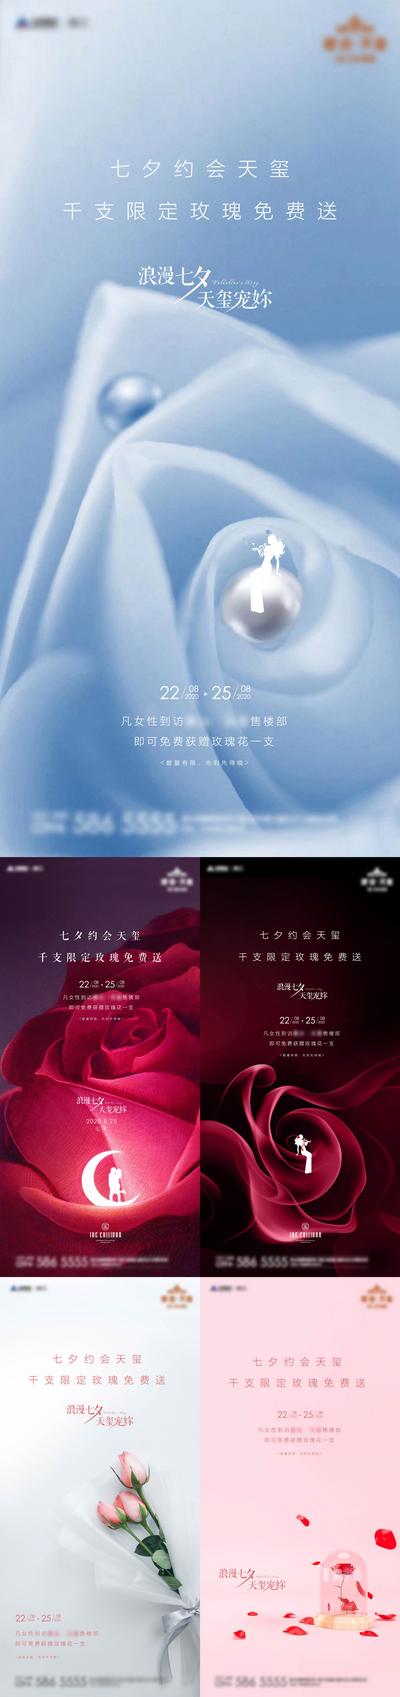 南门网 海报 房地产 中国传统节日 七夕 玫瑰 花艺 浪漫 暖场 